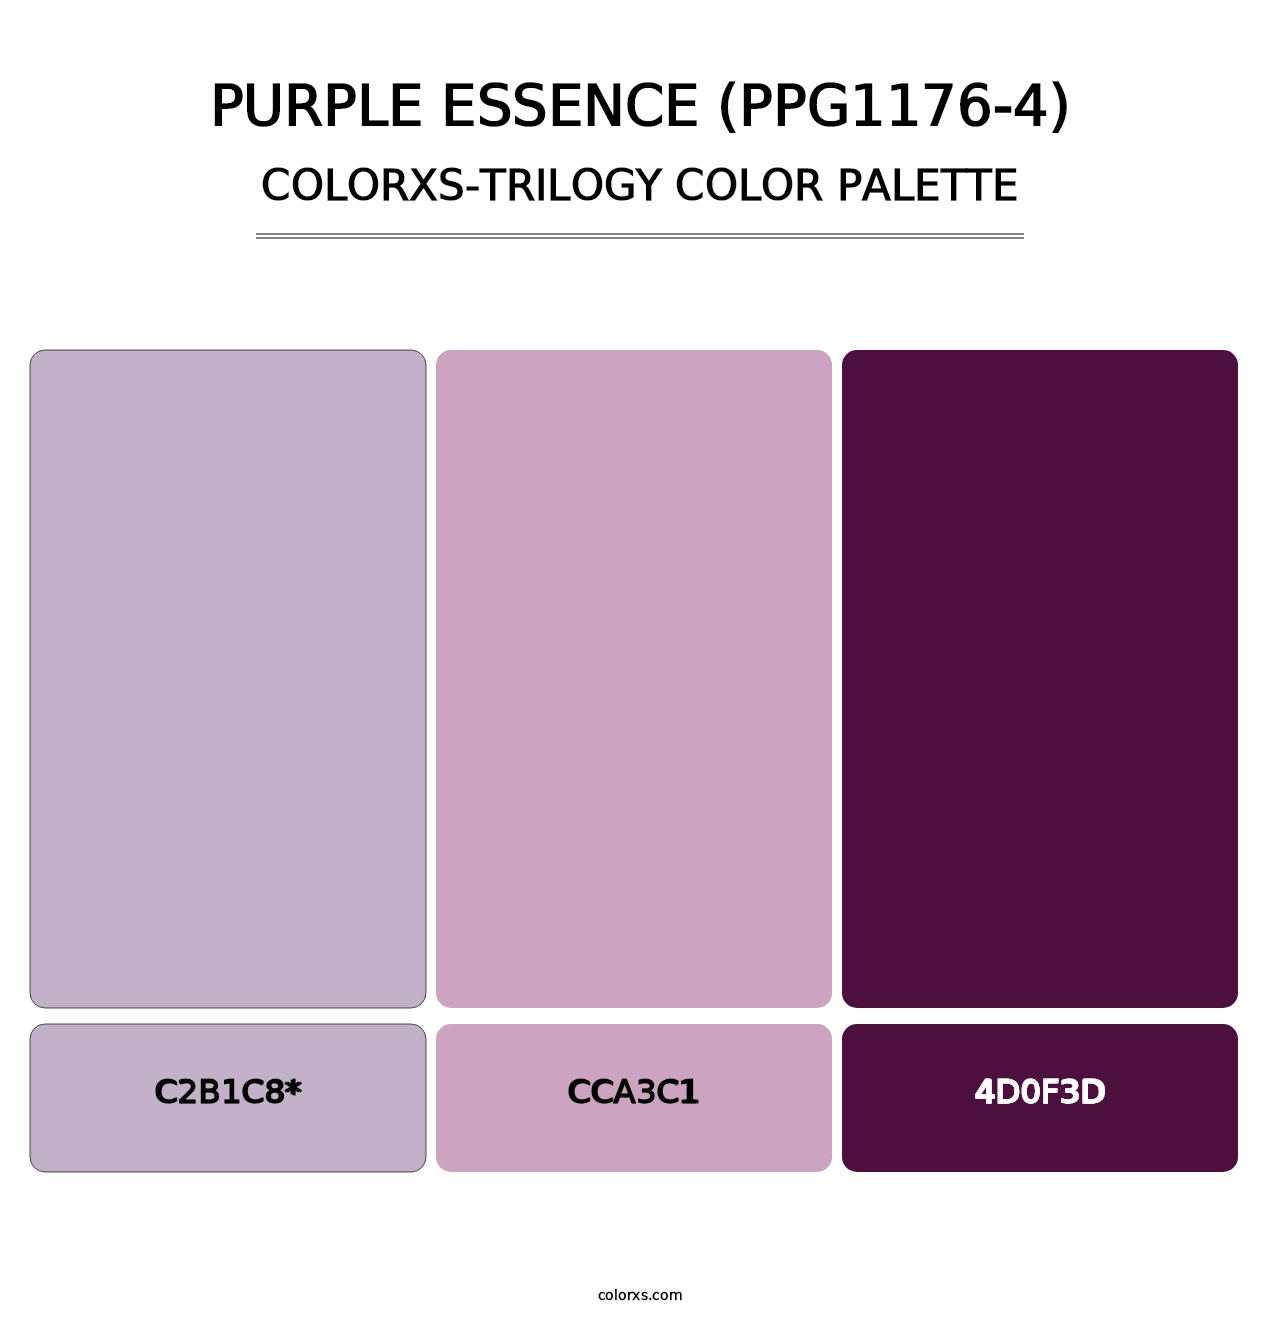 Purple Essence (PPG1176-4) - Colorxs Trilogy Palette